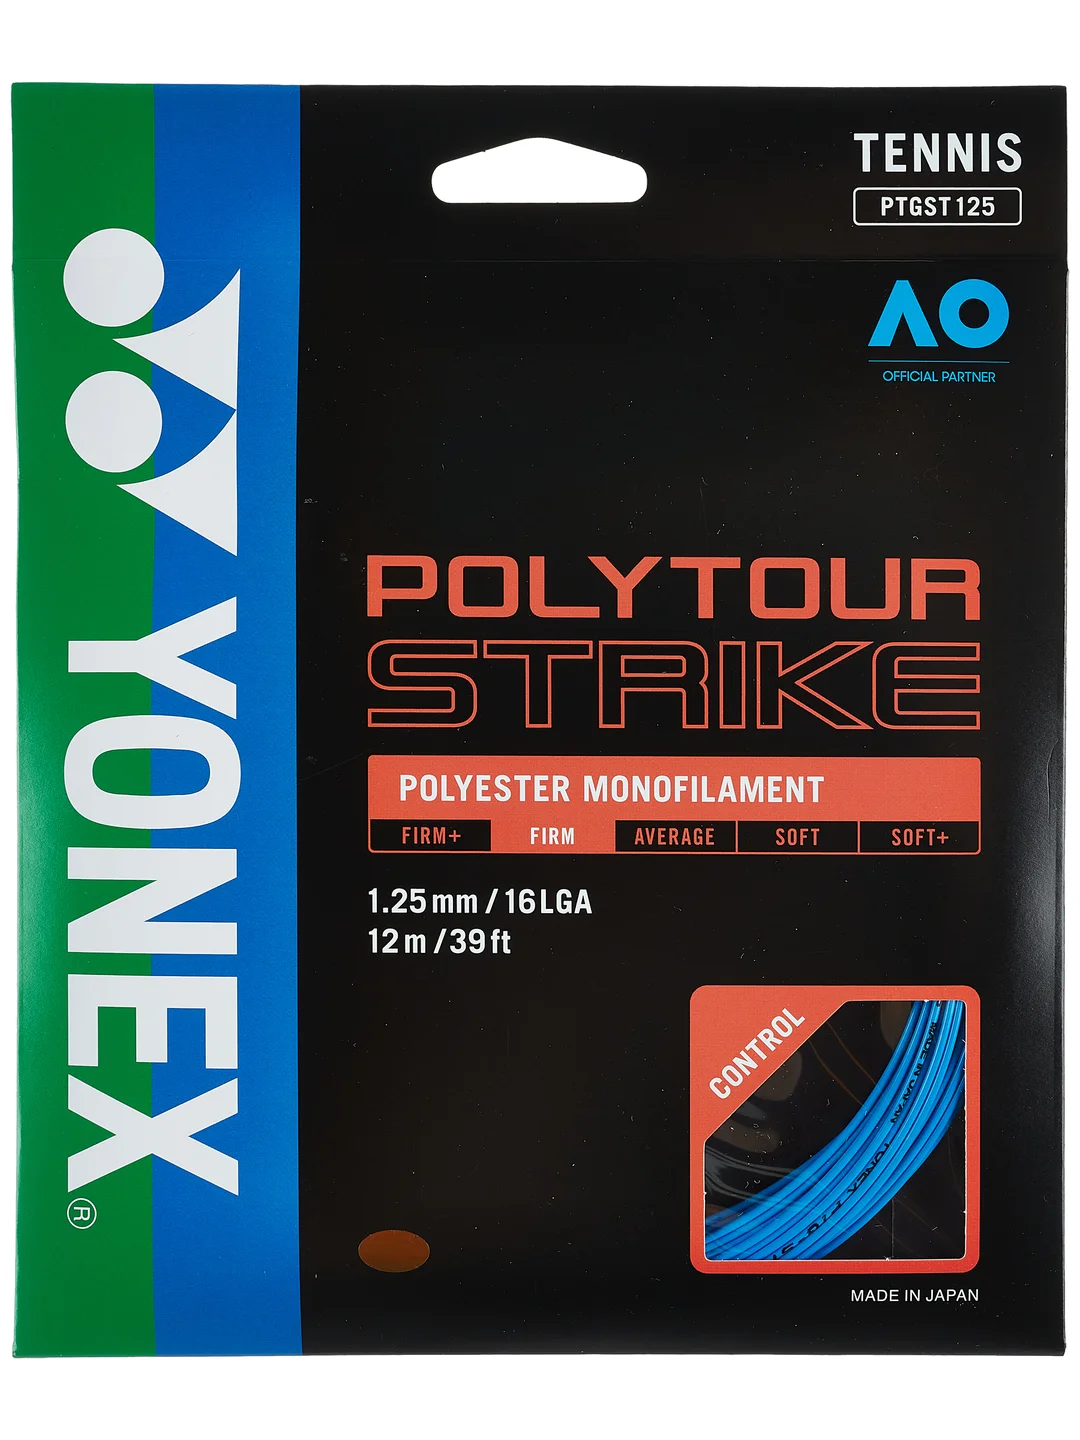 poly tour strike vs pro